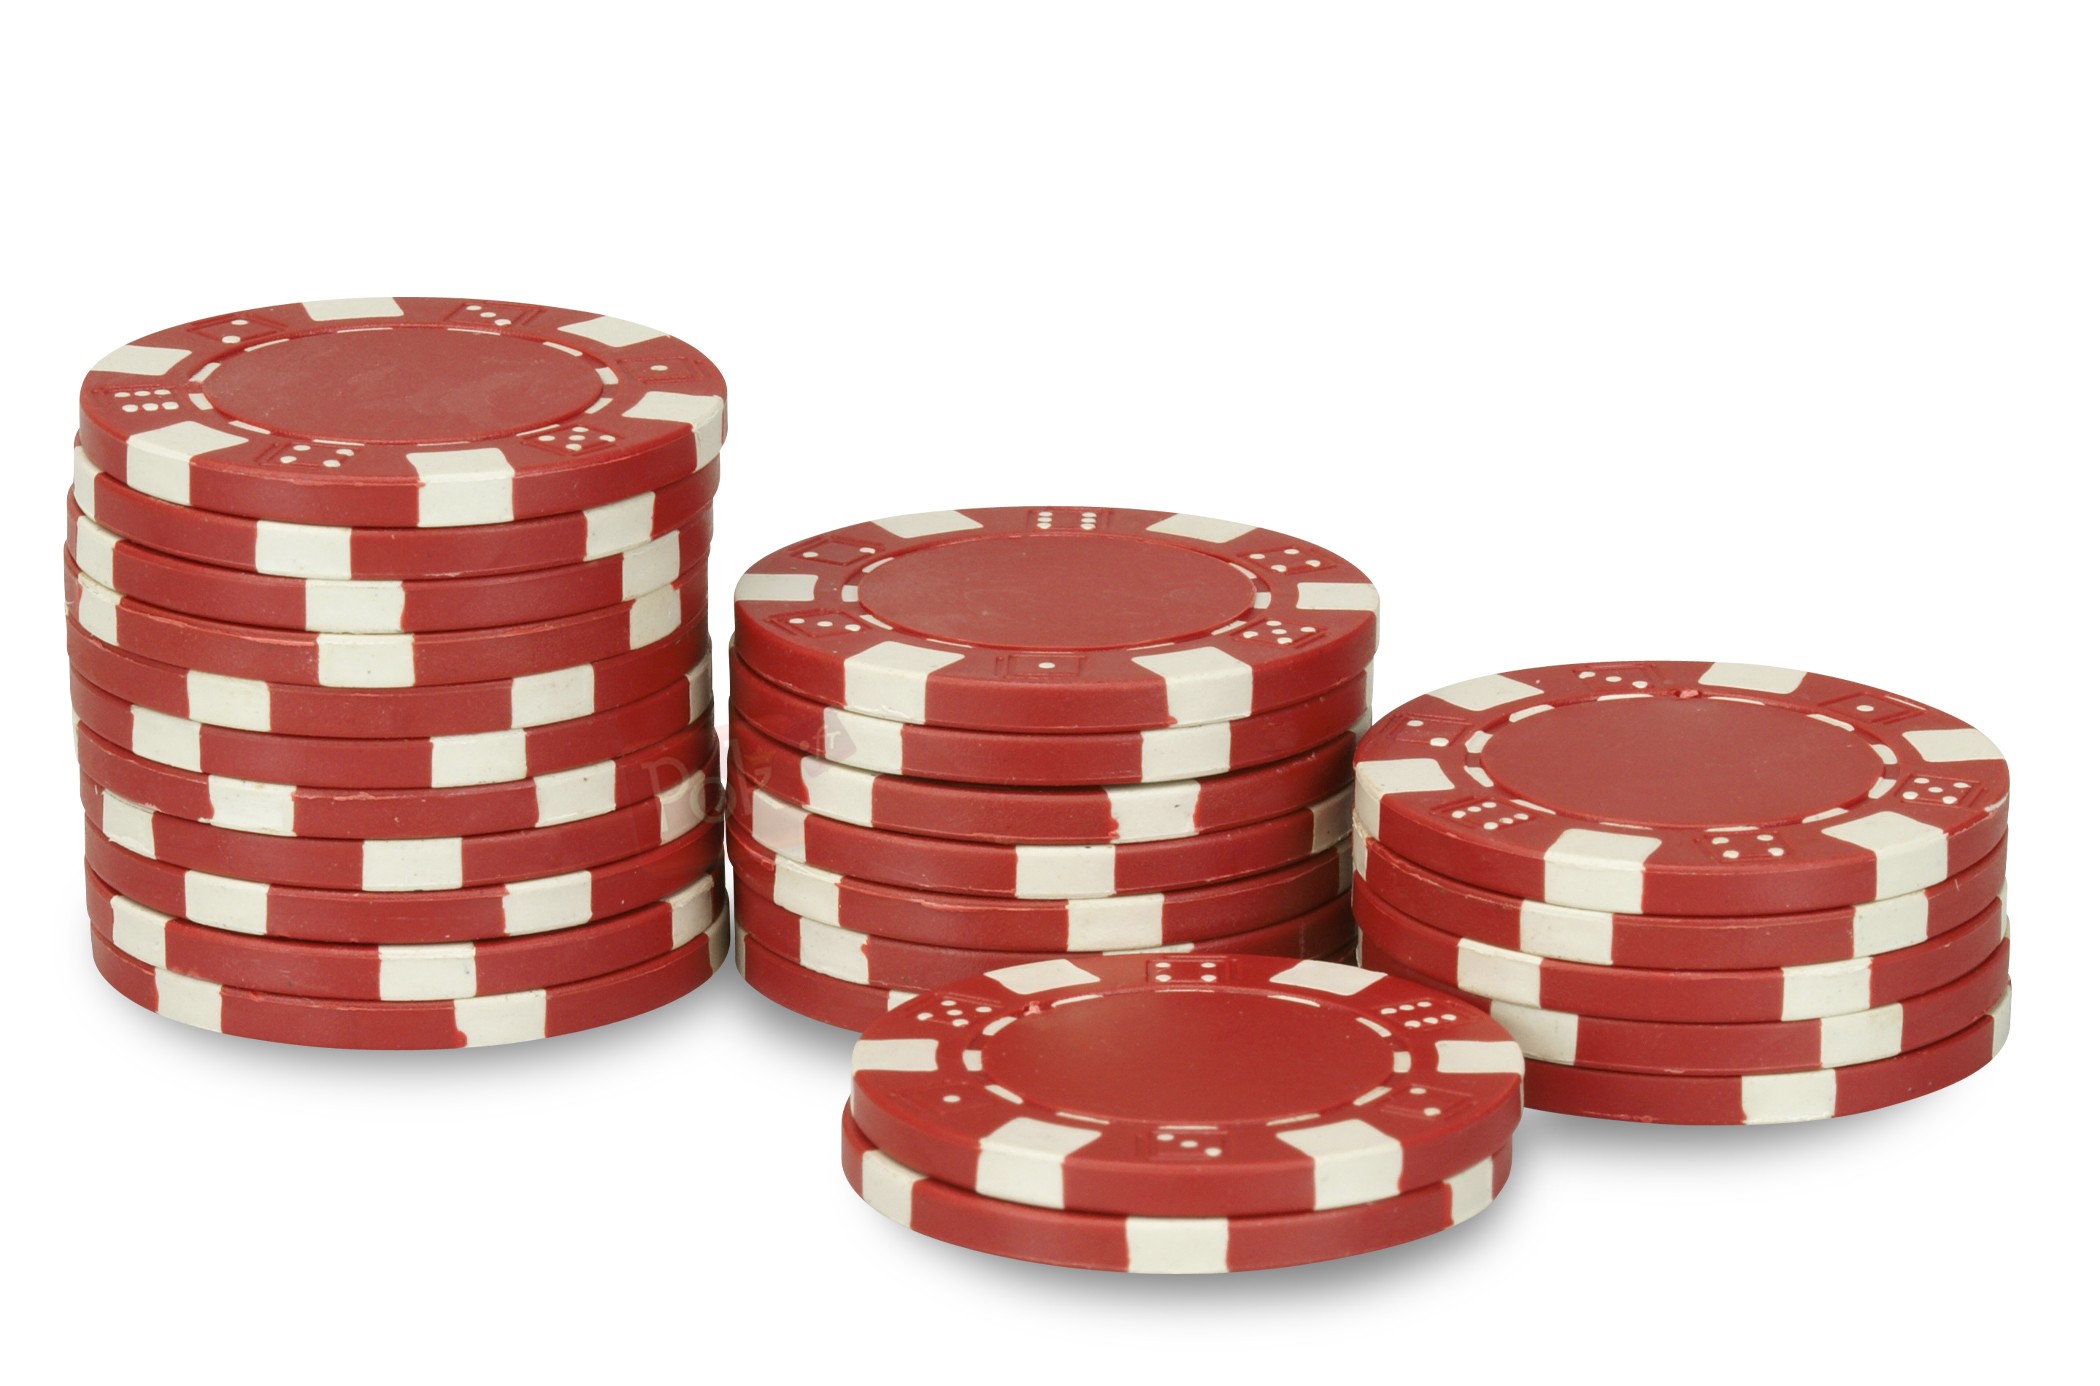 Rouleau de 25 jetons de poker Dice rouge